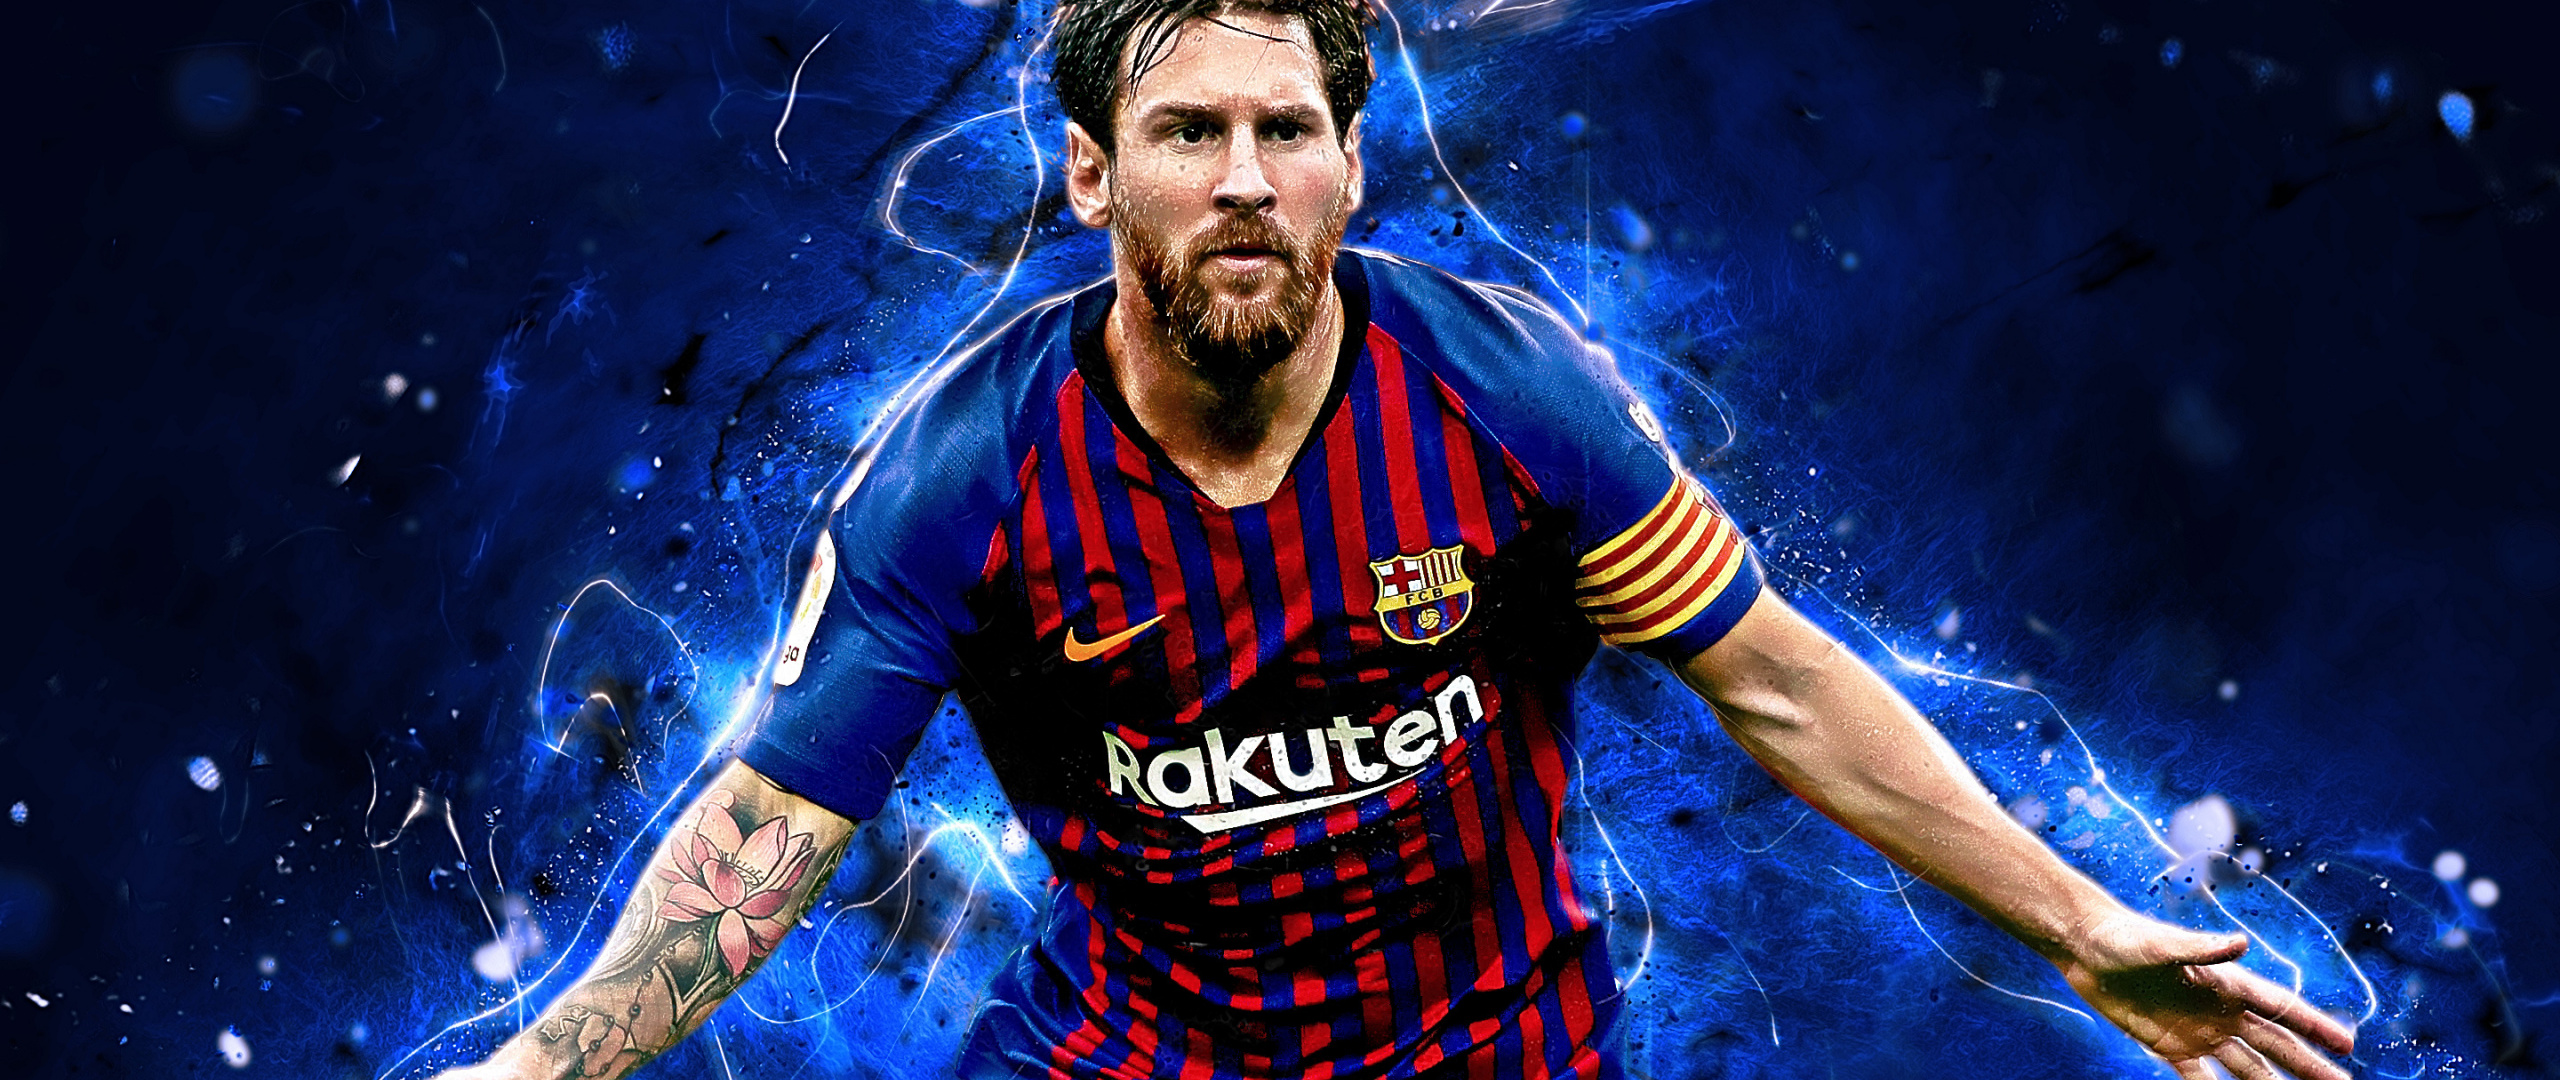 Artwork, Footballer, Celebrity, Lionel Messi, Wallpaper - Messi ...